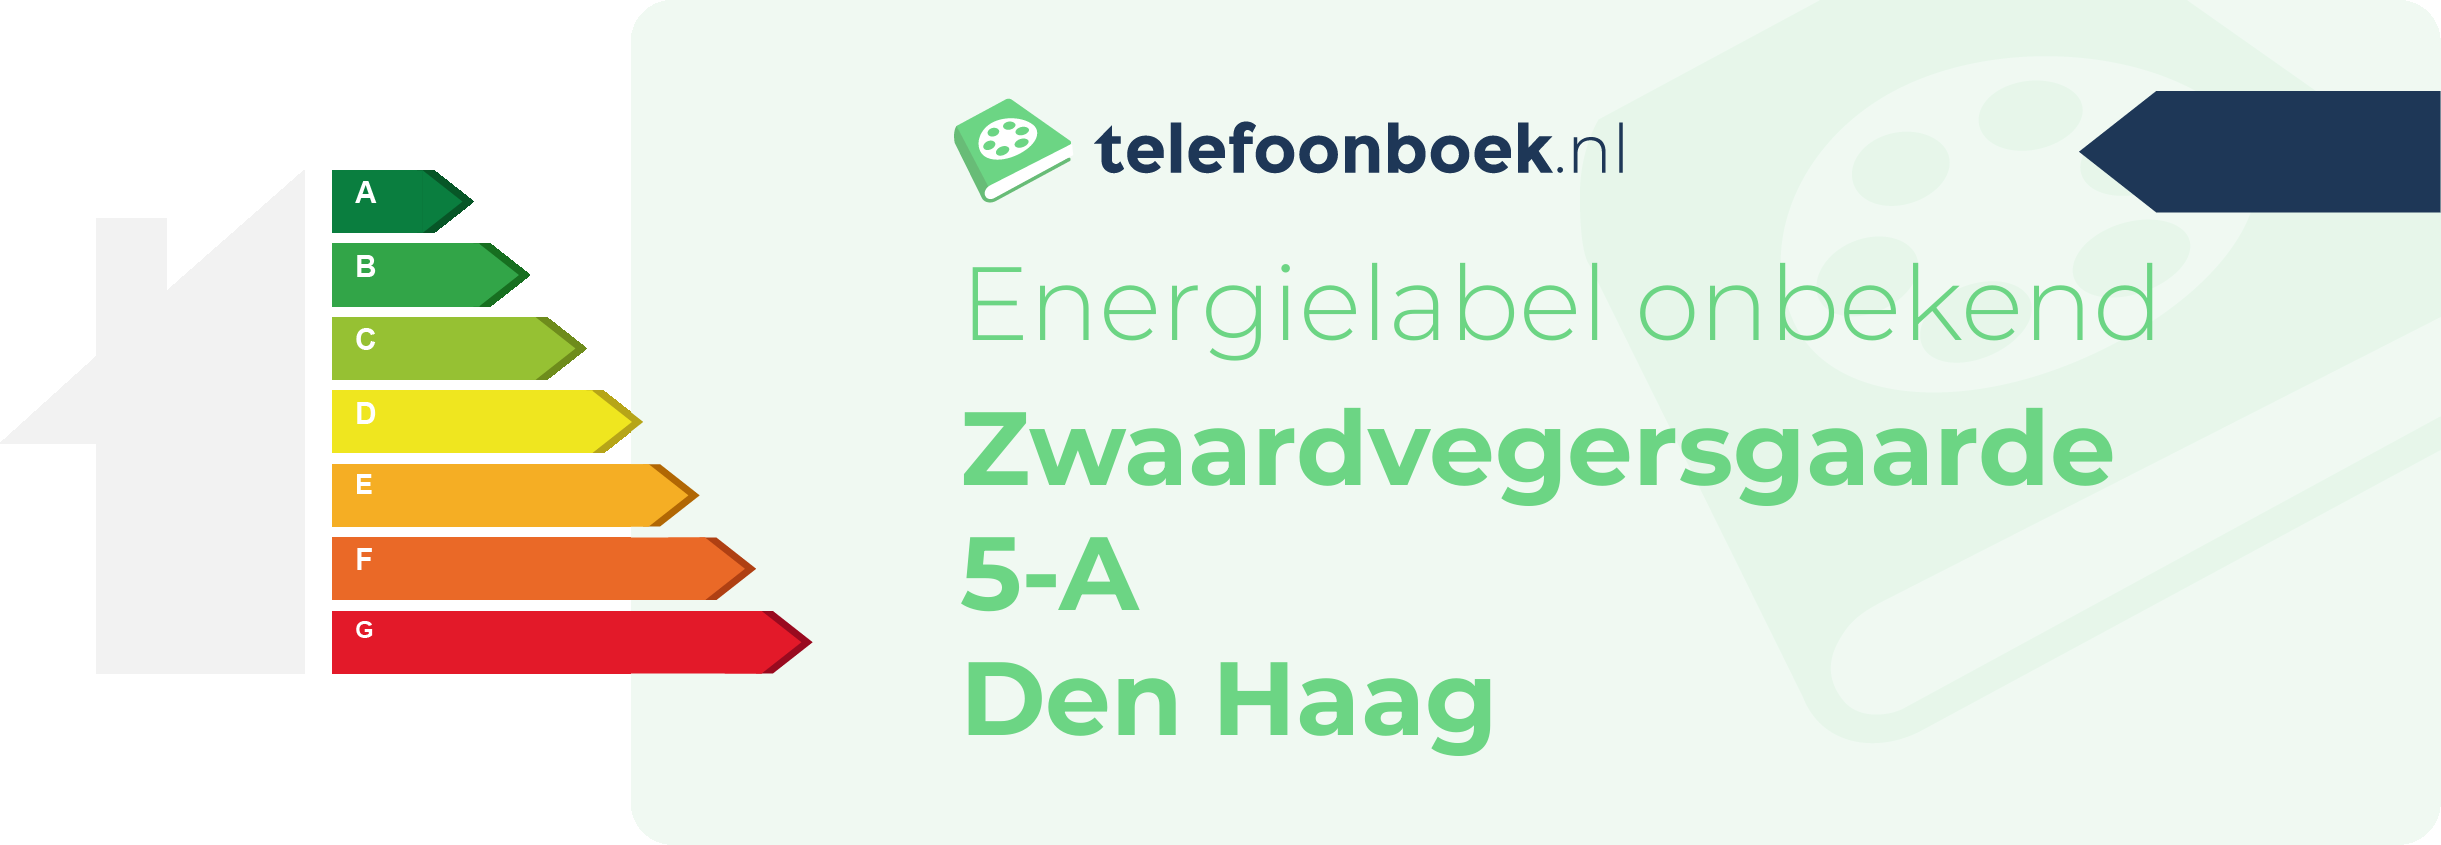 Energielabel Zwaardvegersgaarde 5-A Den Haag